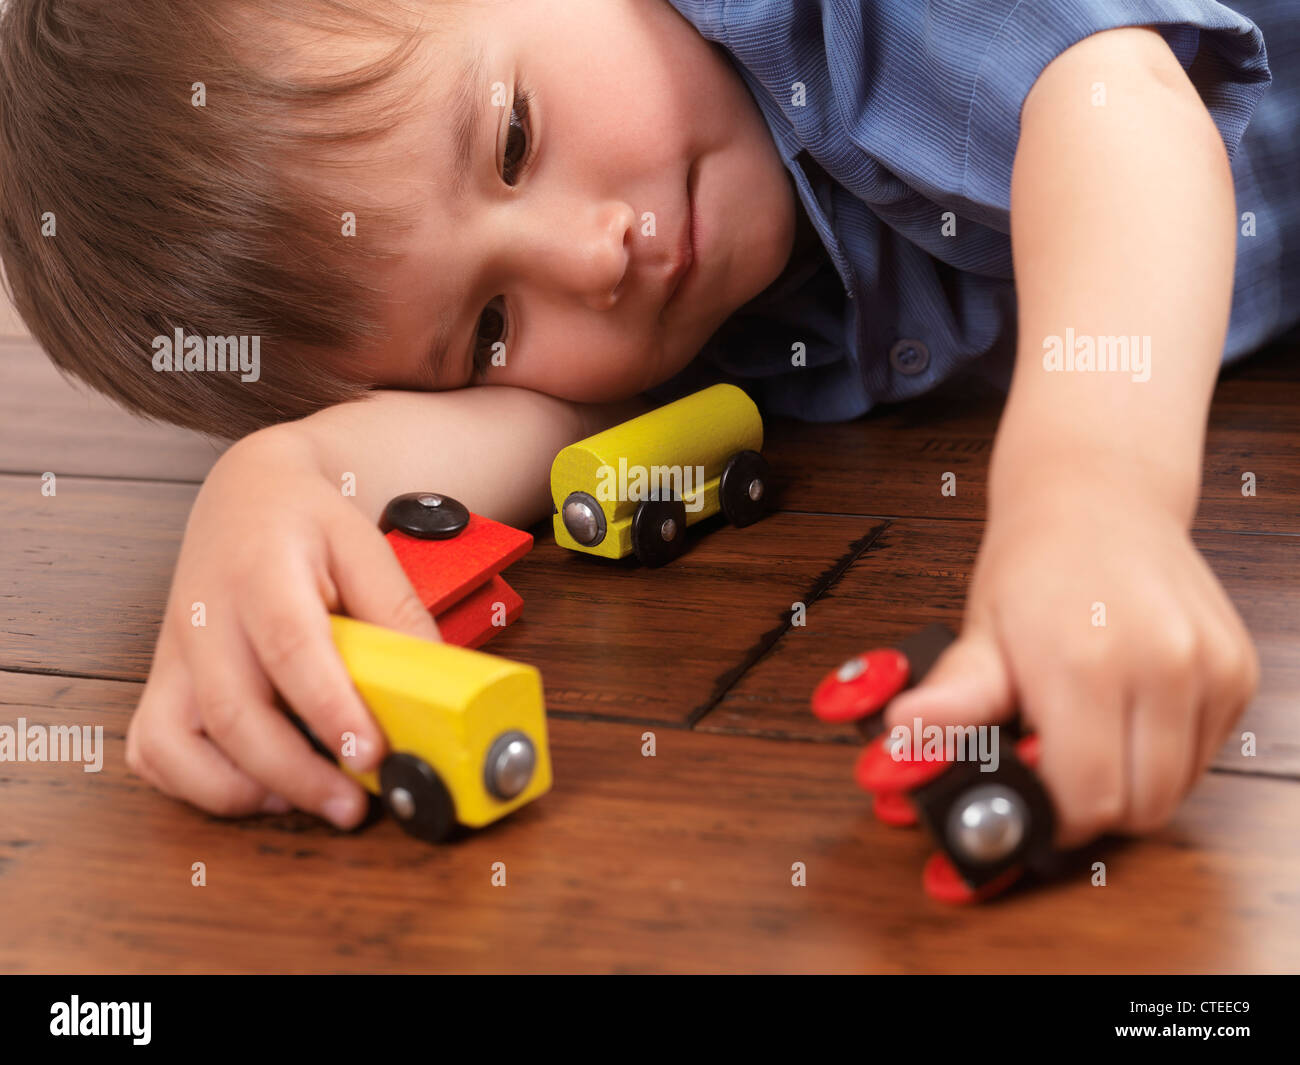 Zwei Jahre alter Junge spielt mit einem bunten Holzspielzeug Zug auf Parkettboden Stockfoto